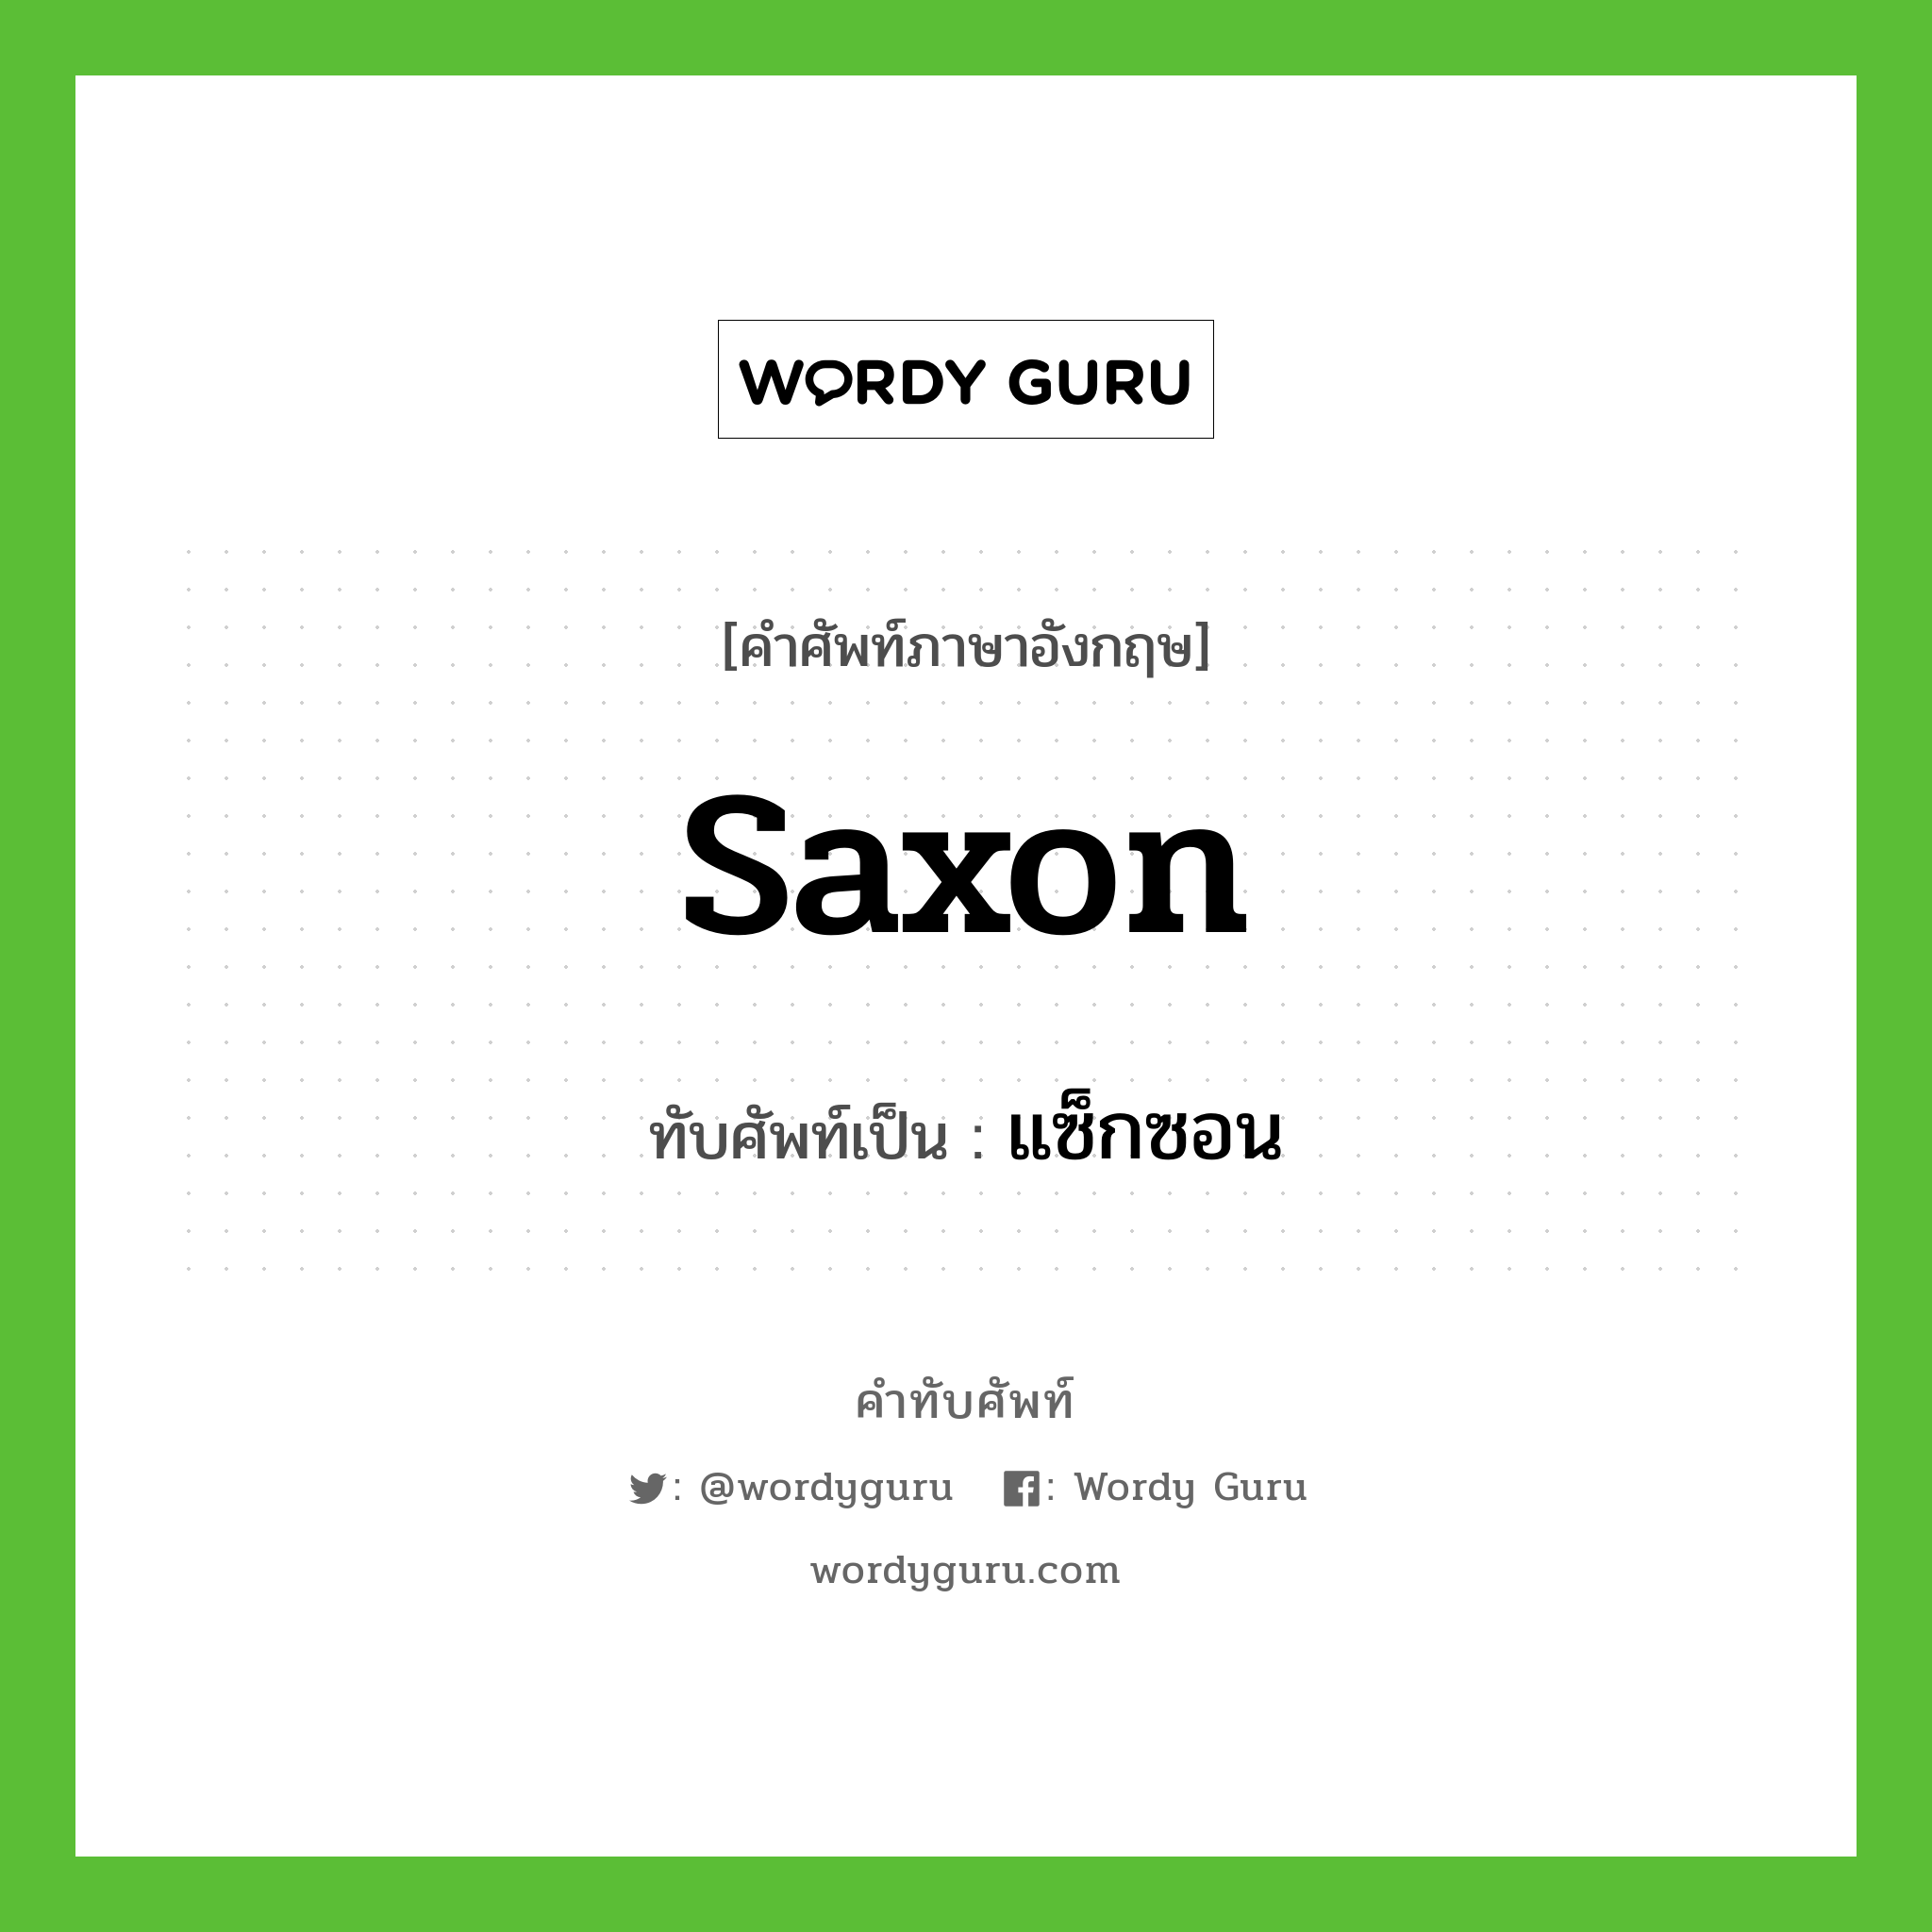 Saxon เขียนเป็นคำไทยว่าอะไร?, คำศัพท์ภาษาอังกฤษ Saxon ทับศัพท์เป็น แซ็กซอน